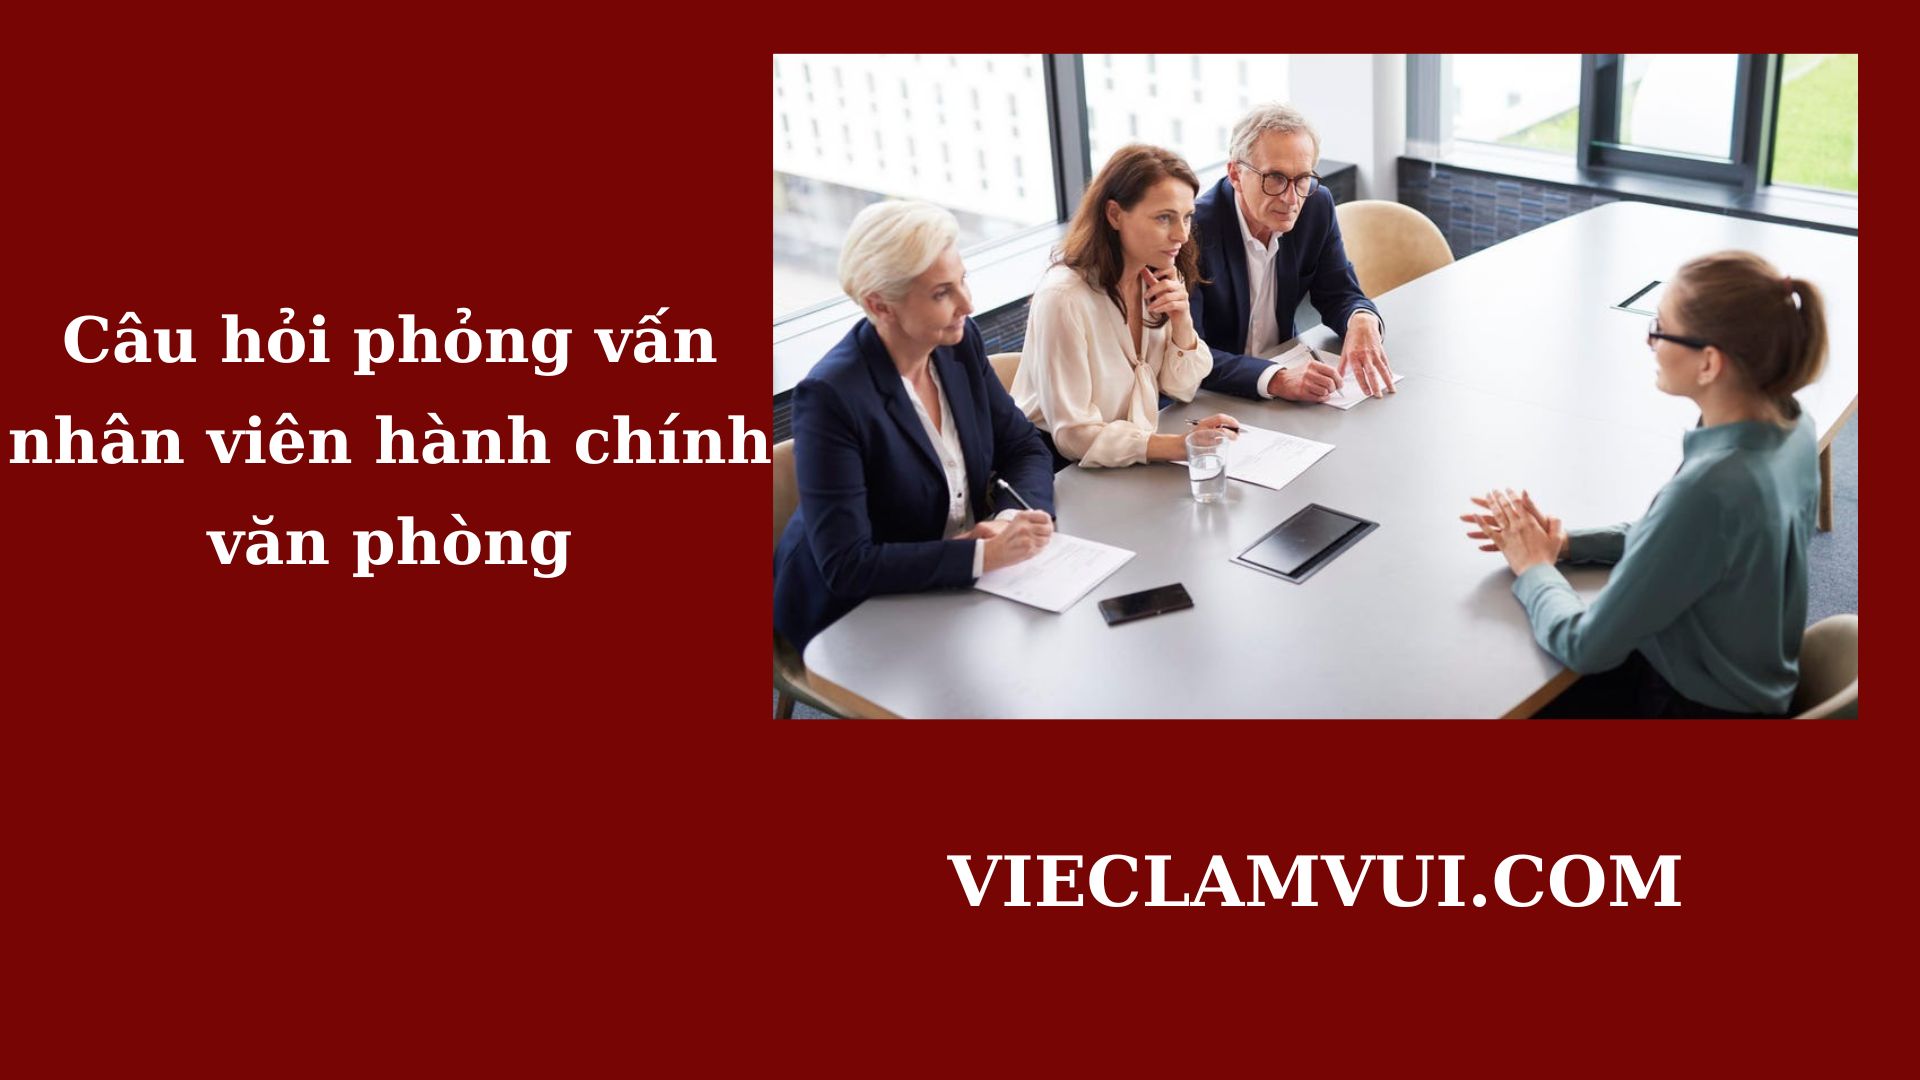 Câu hỏi phỏng vấn nhân viên hành chính văn phòng - ViecLamVui